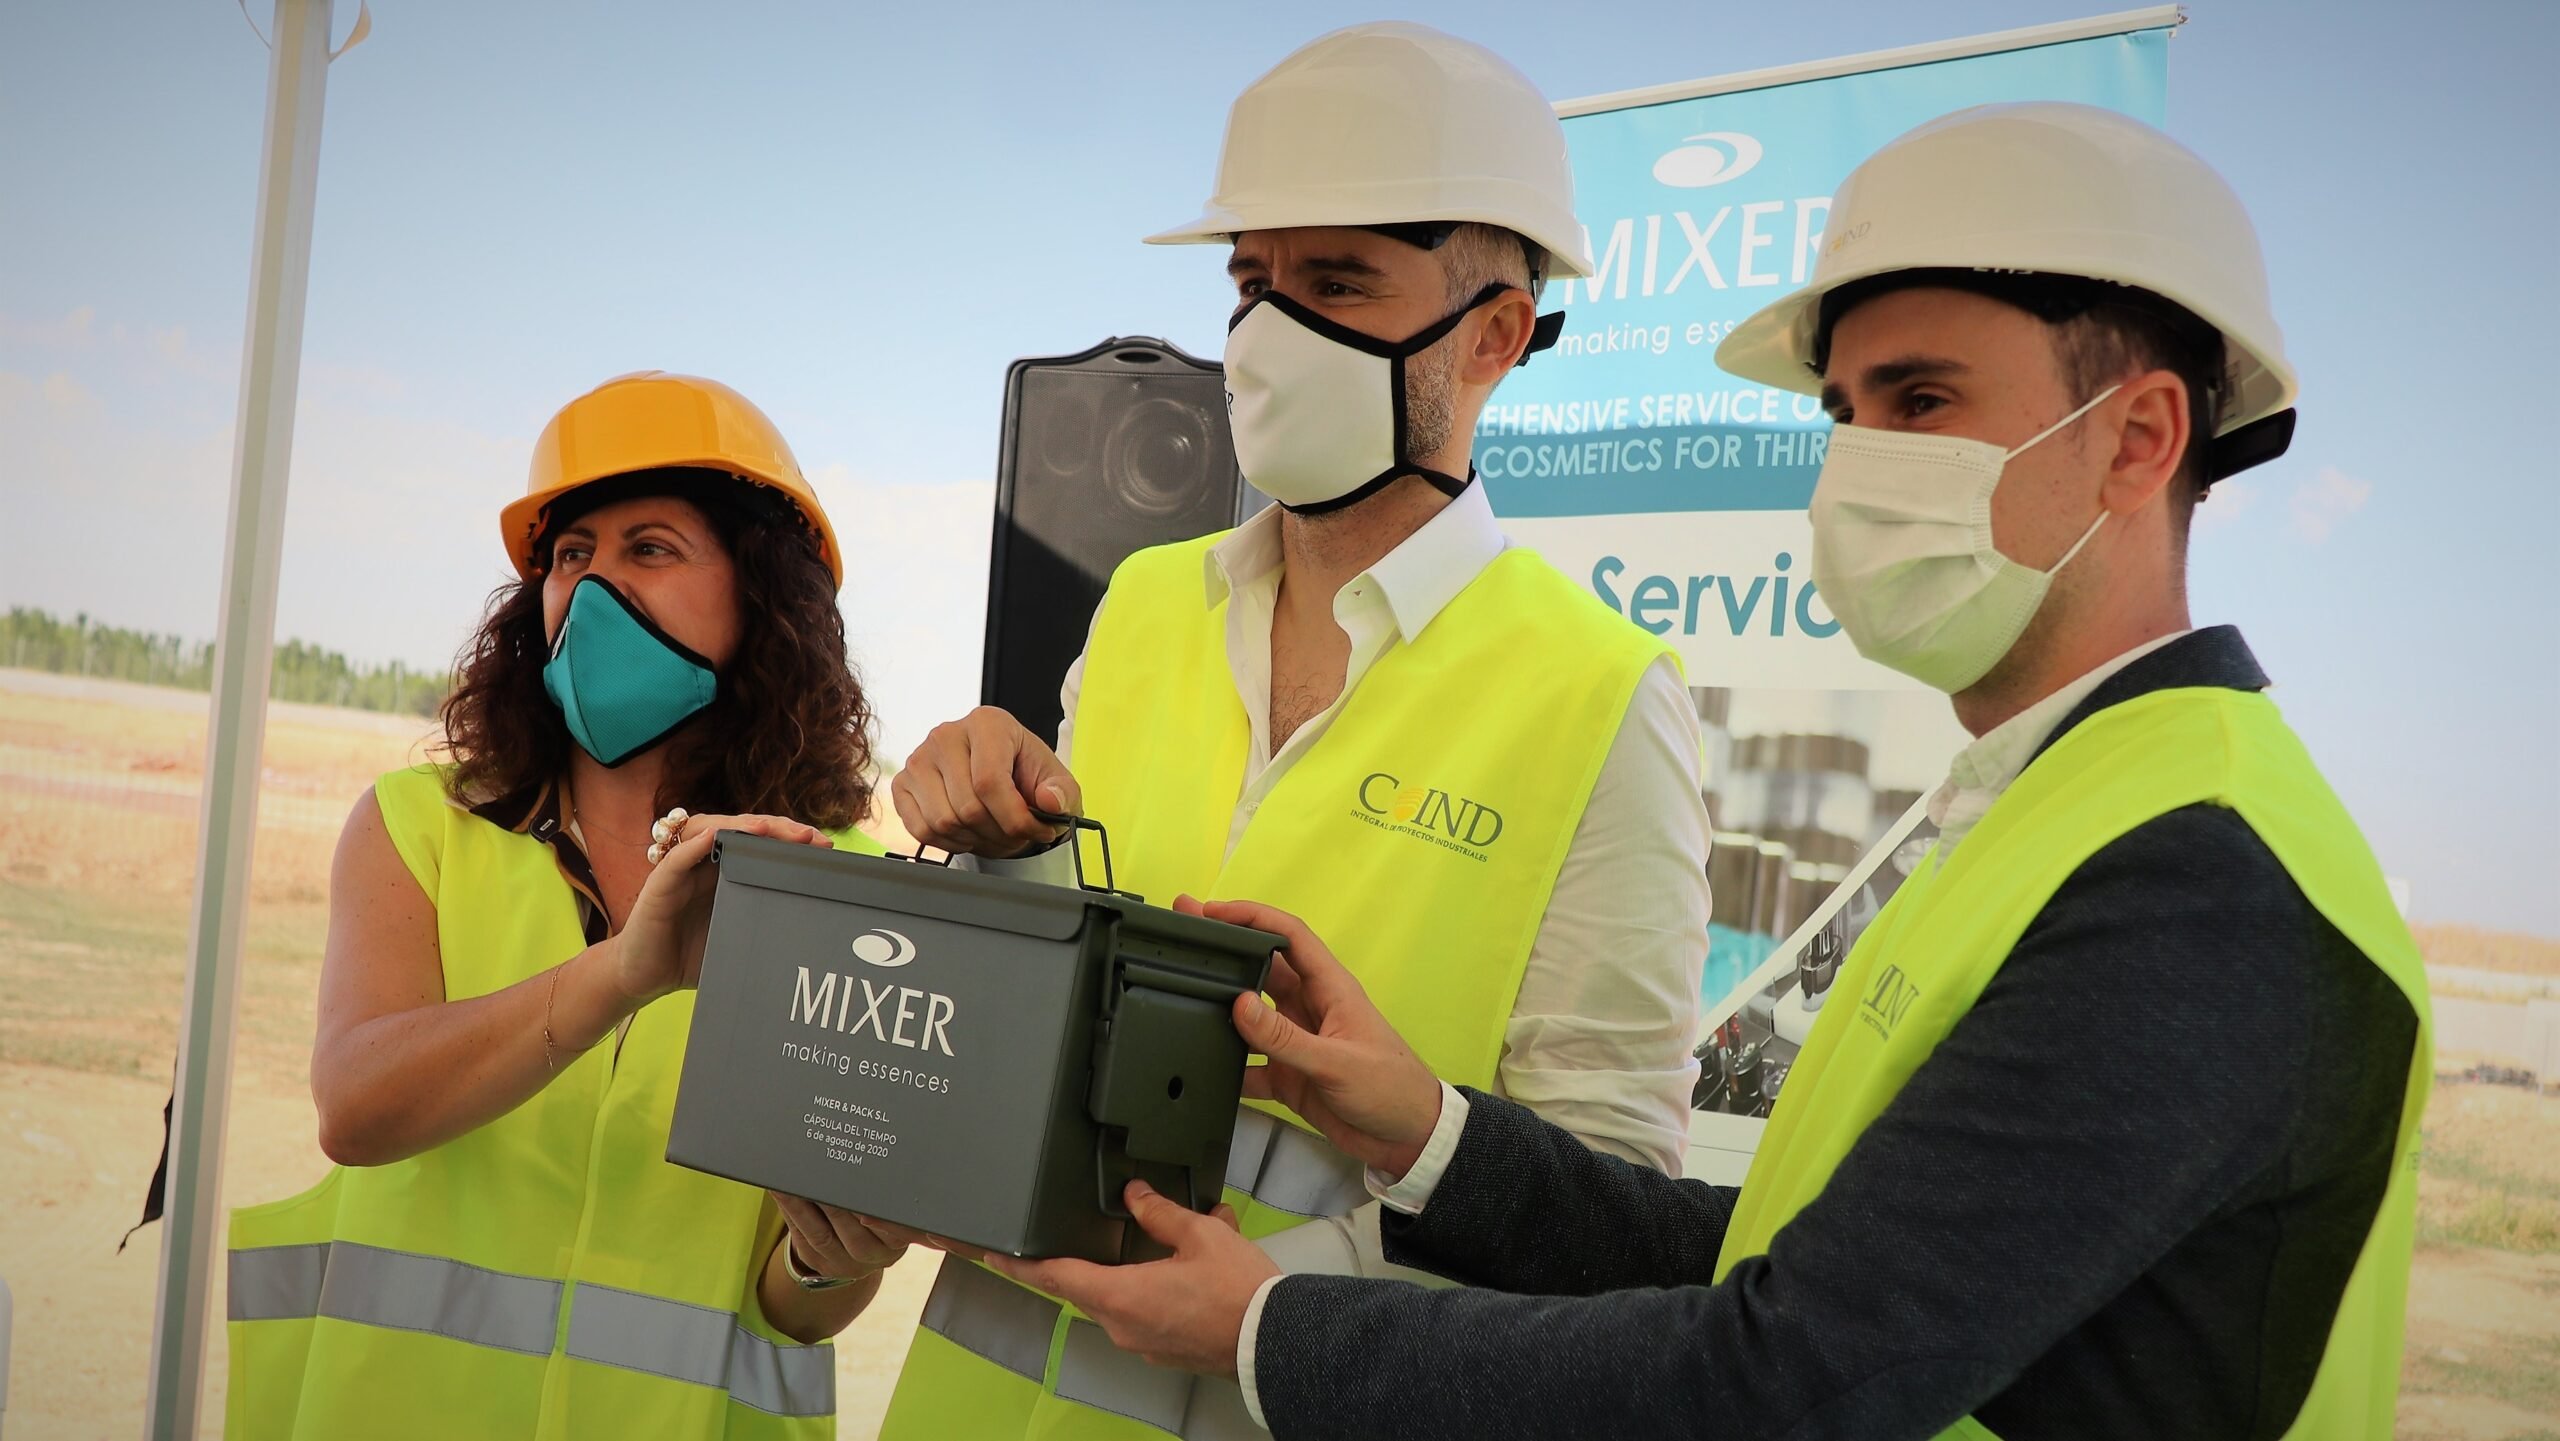 Primera piedra de la planta de Mixer en Cabanillas del Campo, donde iniciará su actividad en 2021.